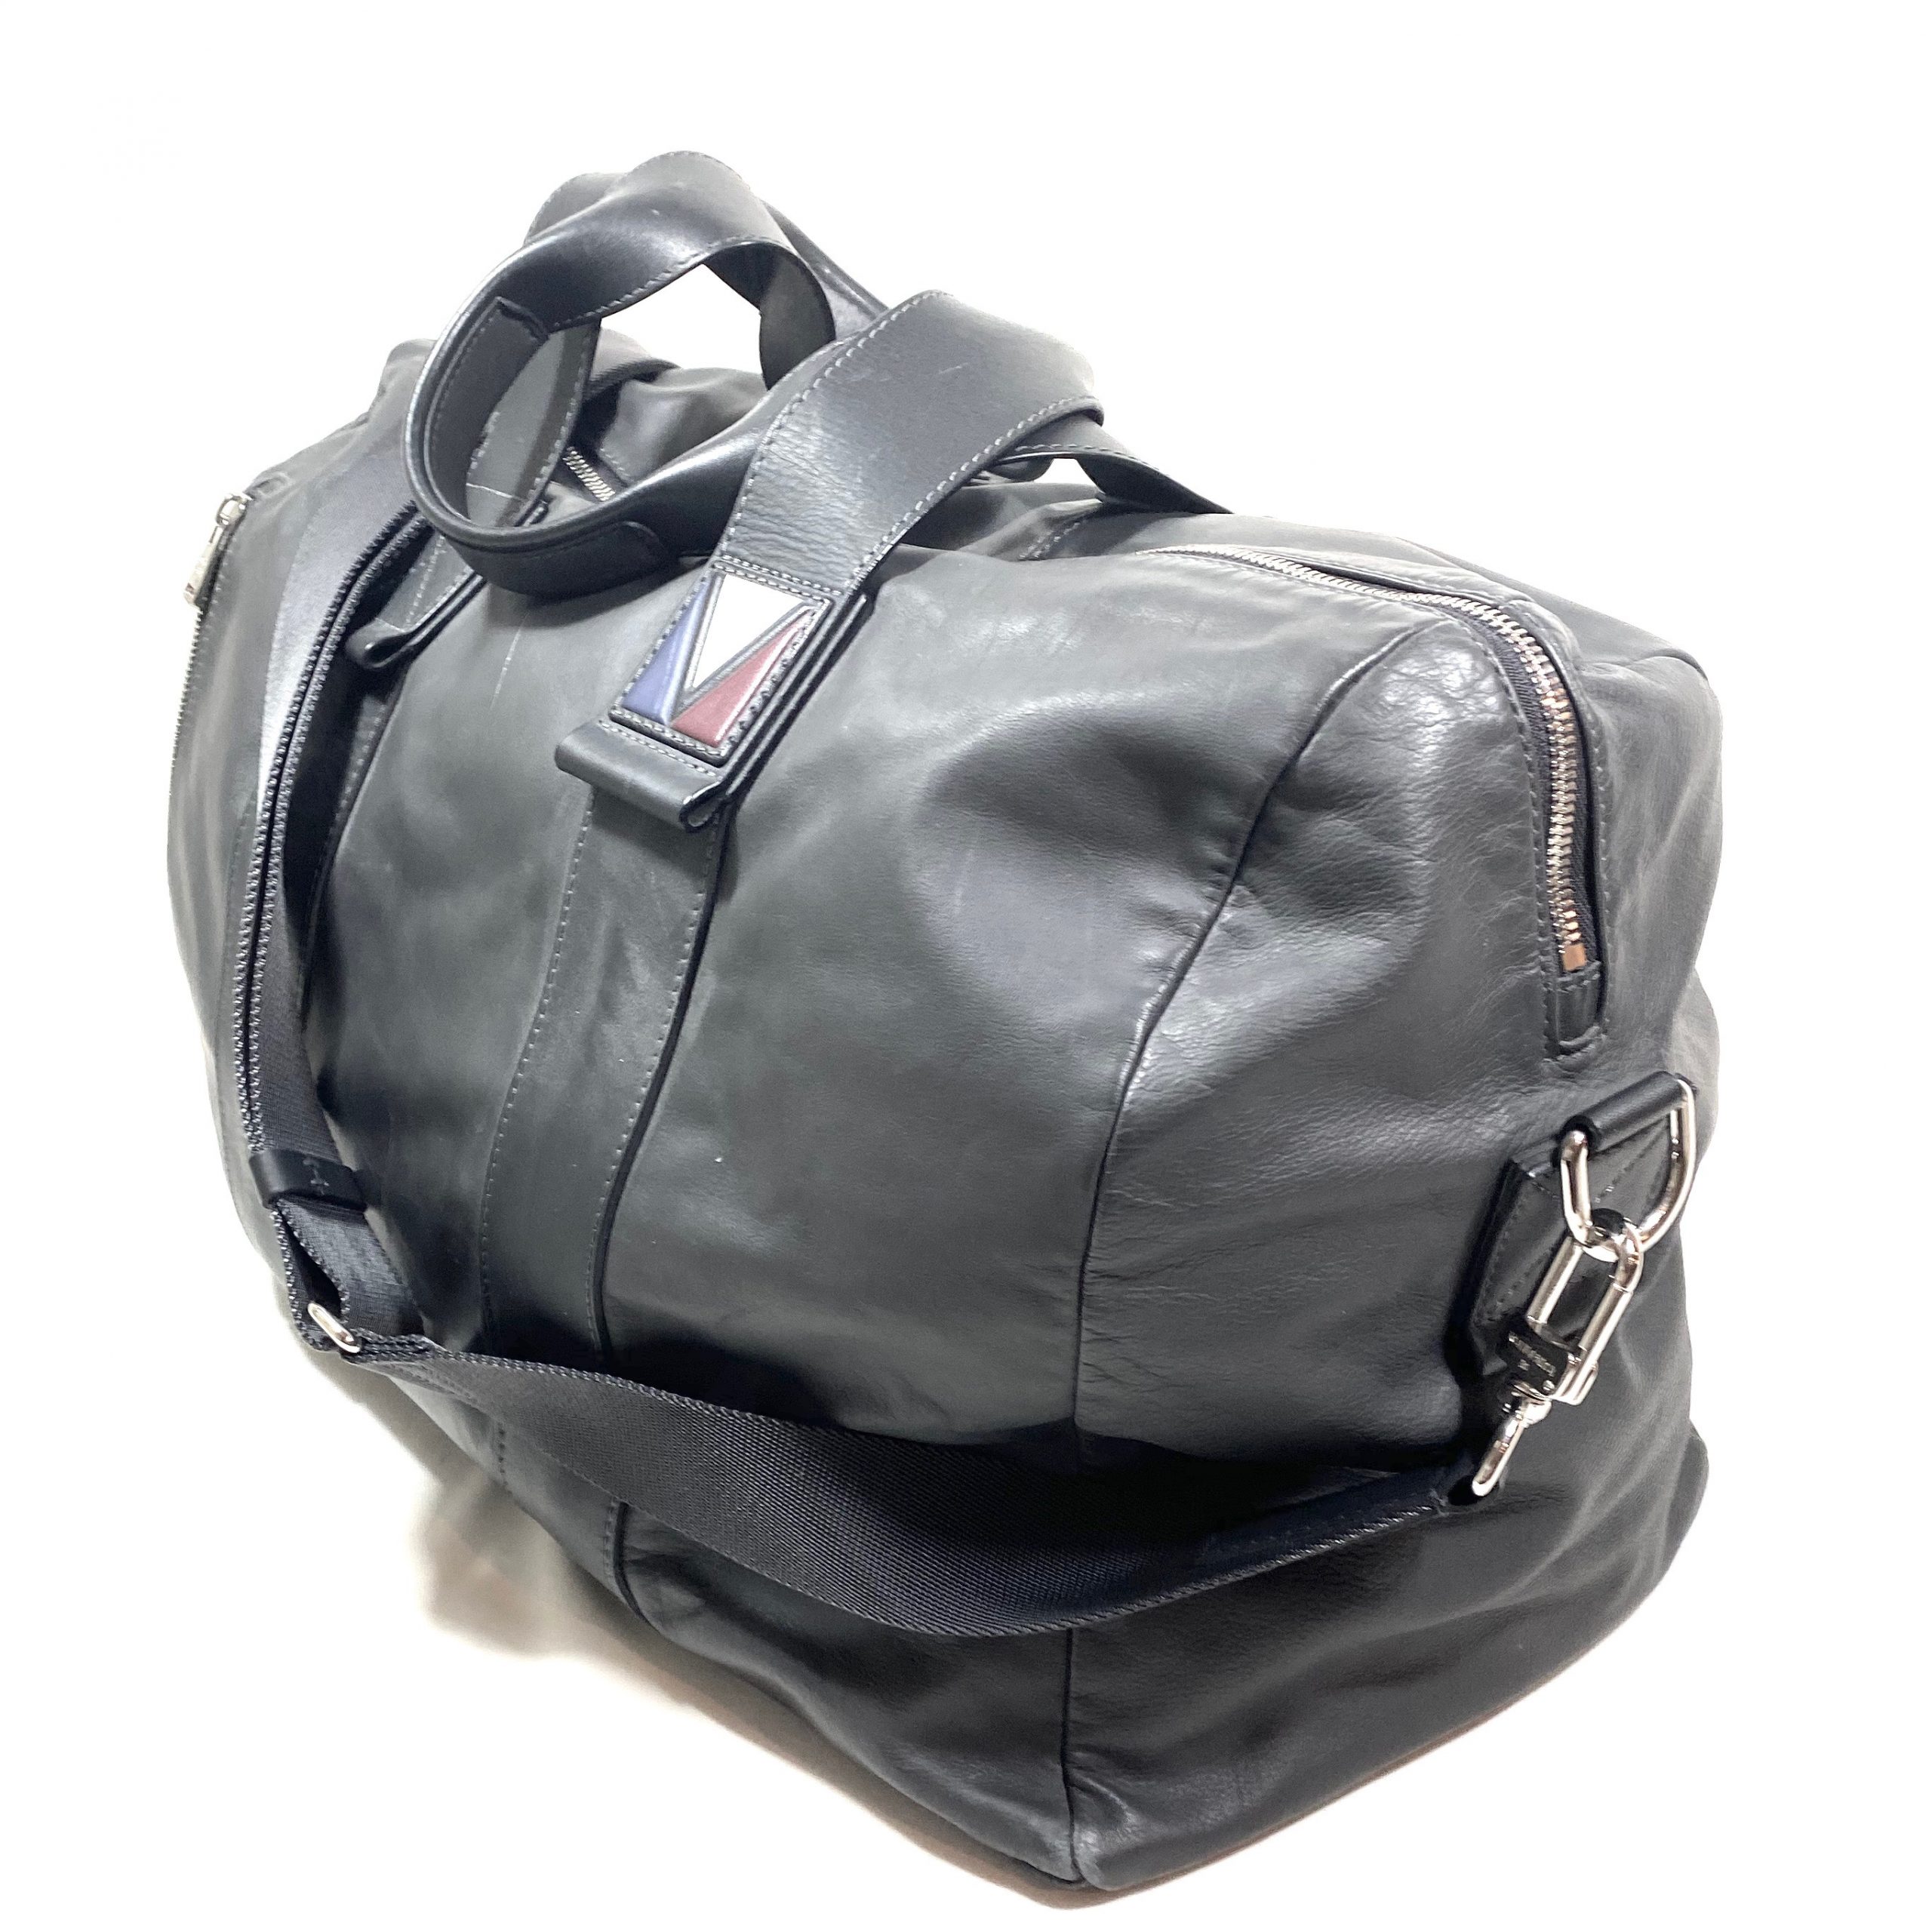 Shop Louis Vuitton 2022 SS Duffle Bag (M43587) by design◇base